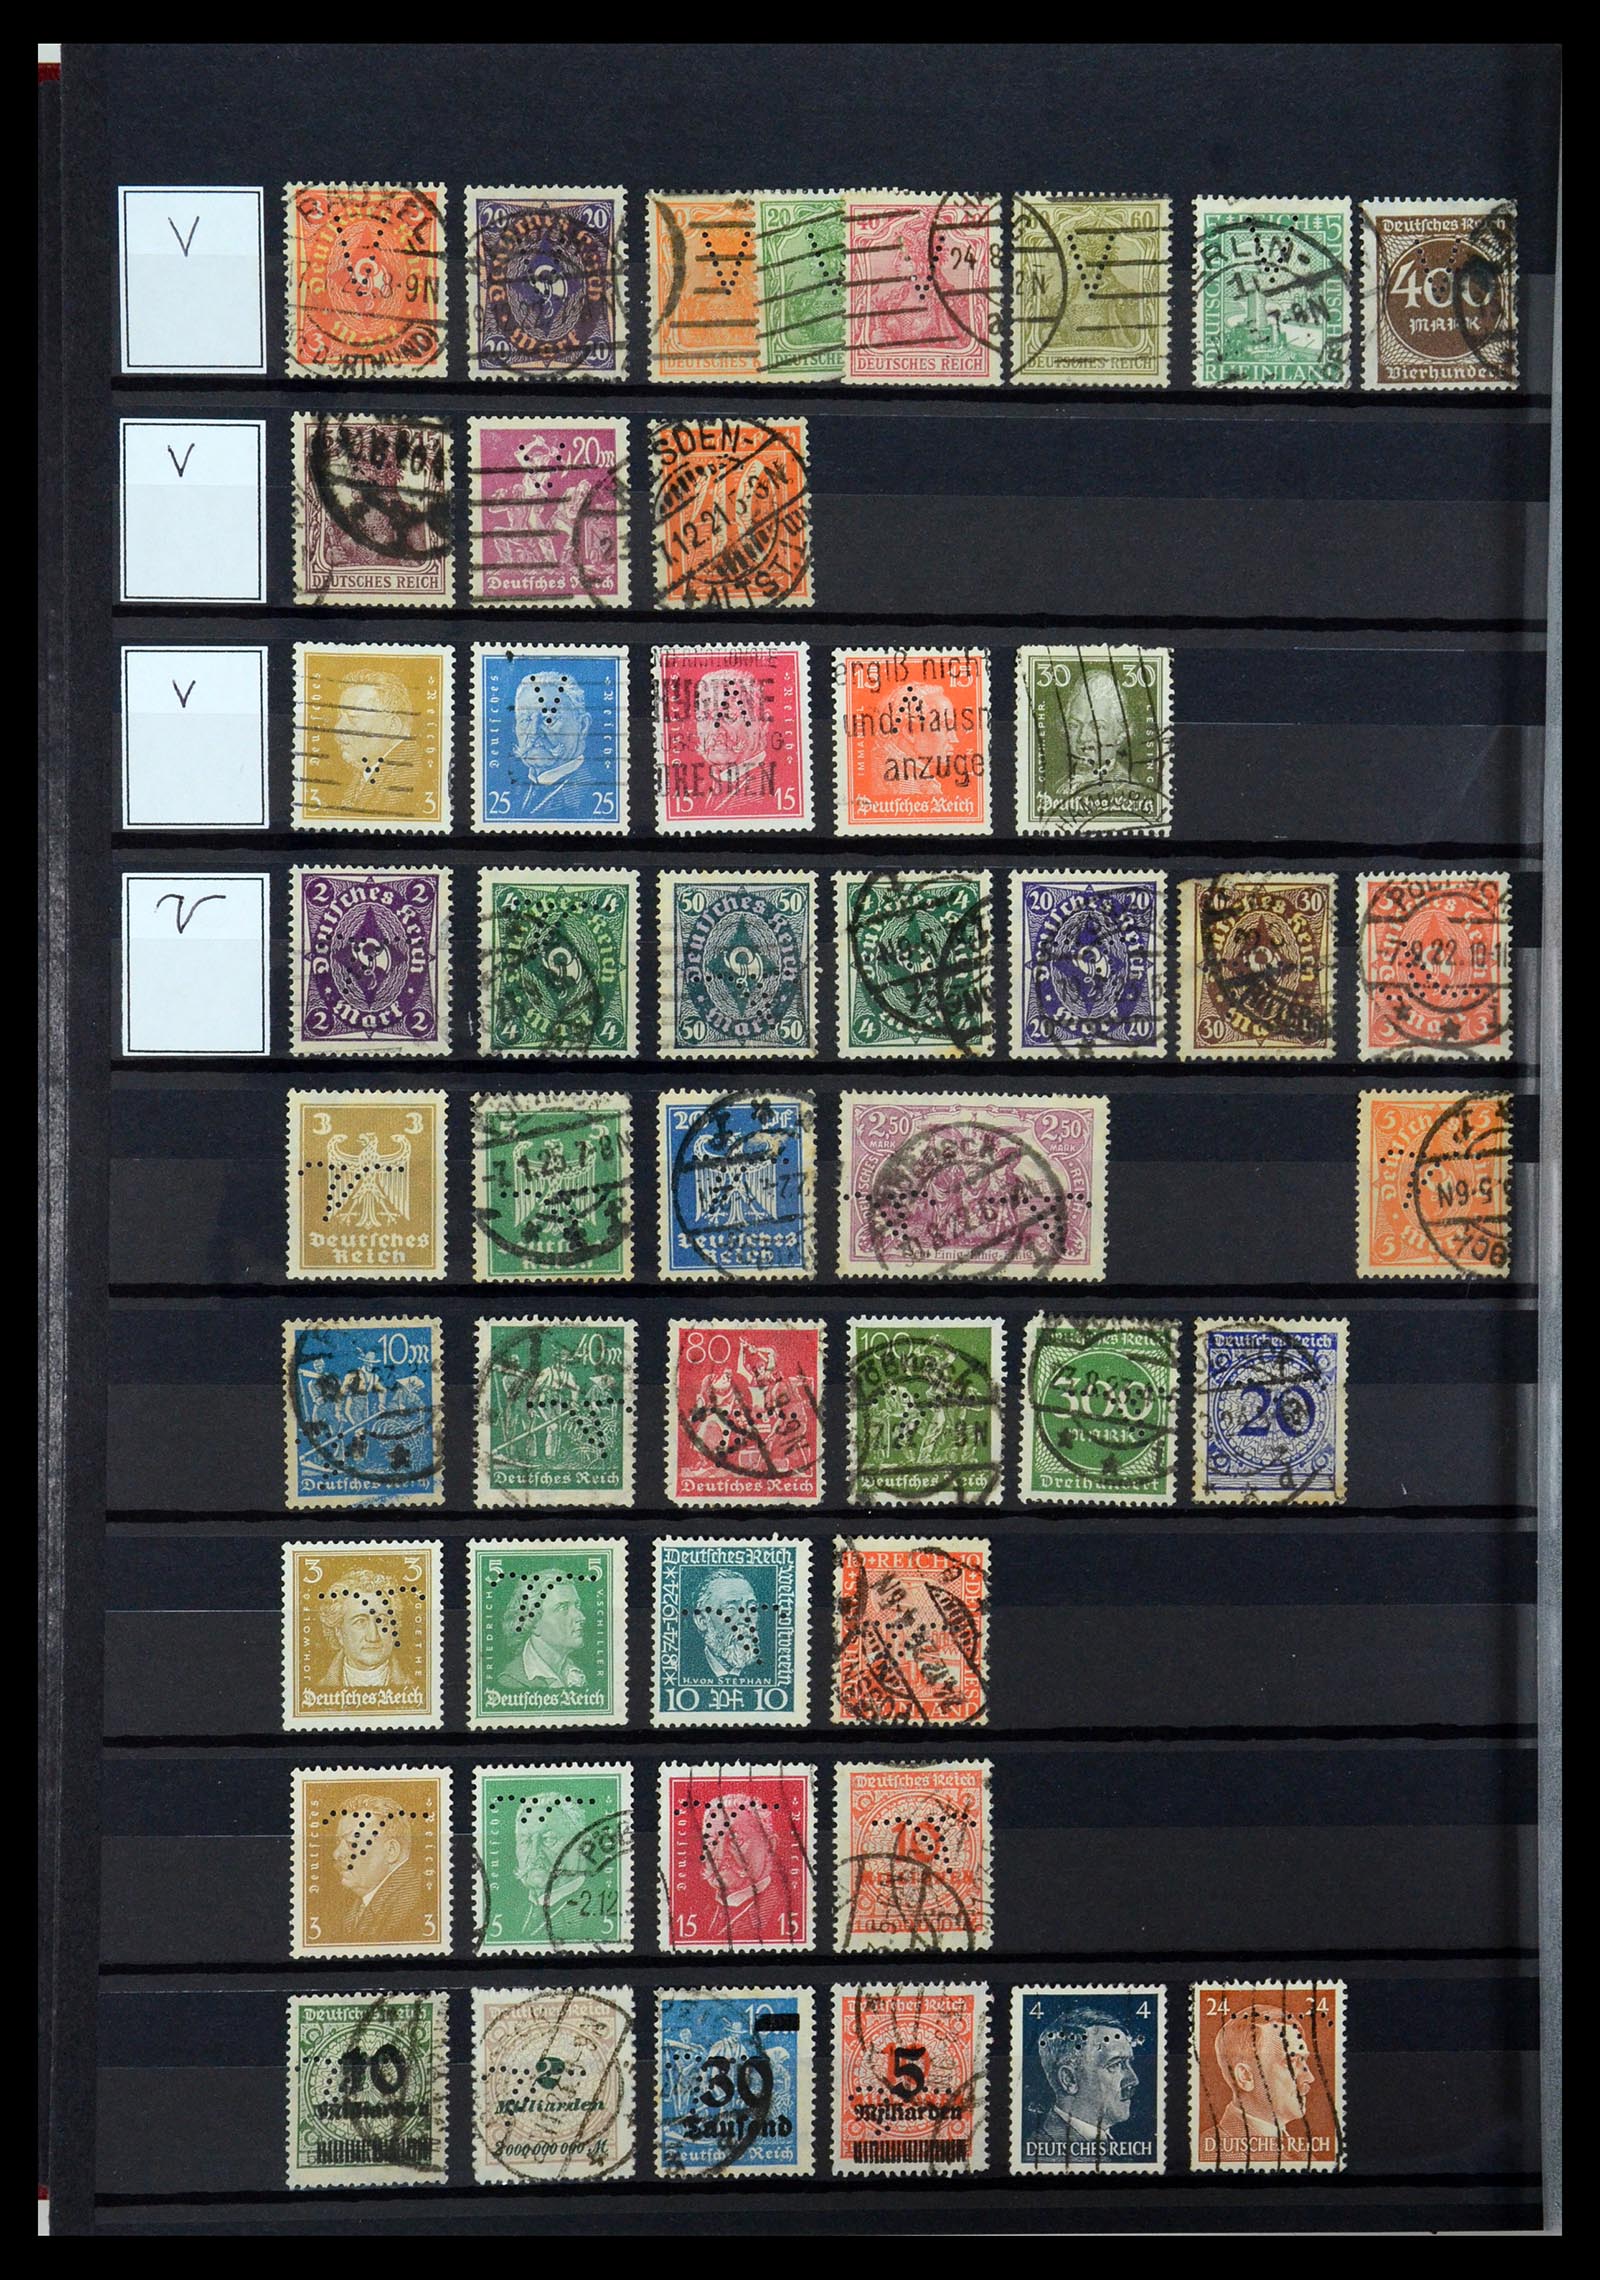 36405 323 - Stamp collection 36405 German Reich perfins 1880-1945.